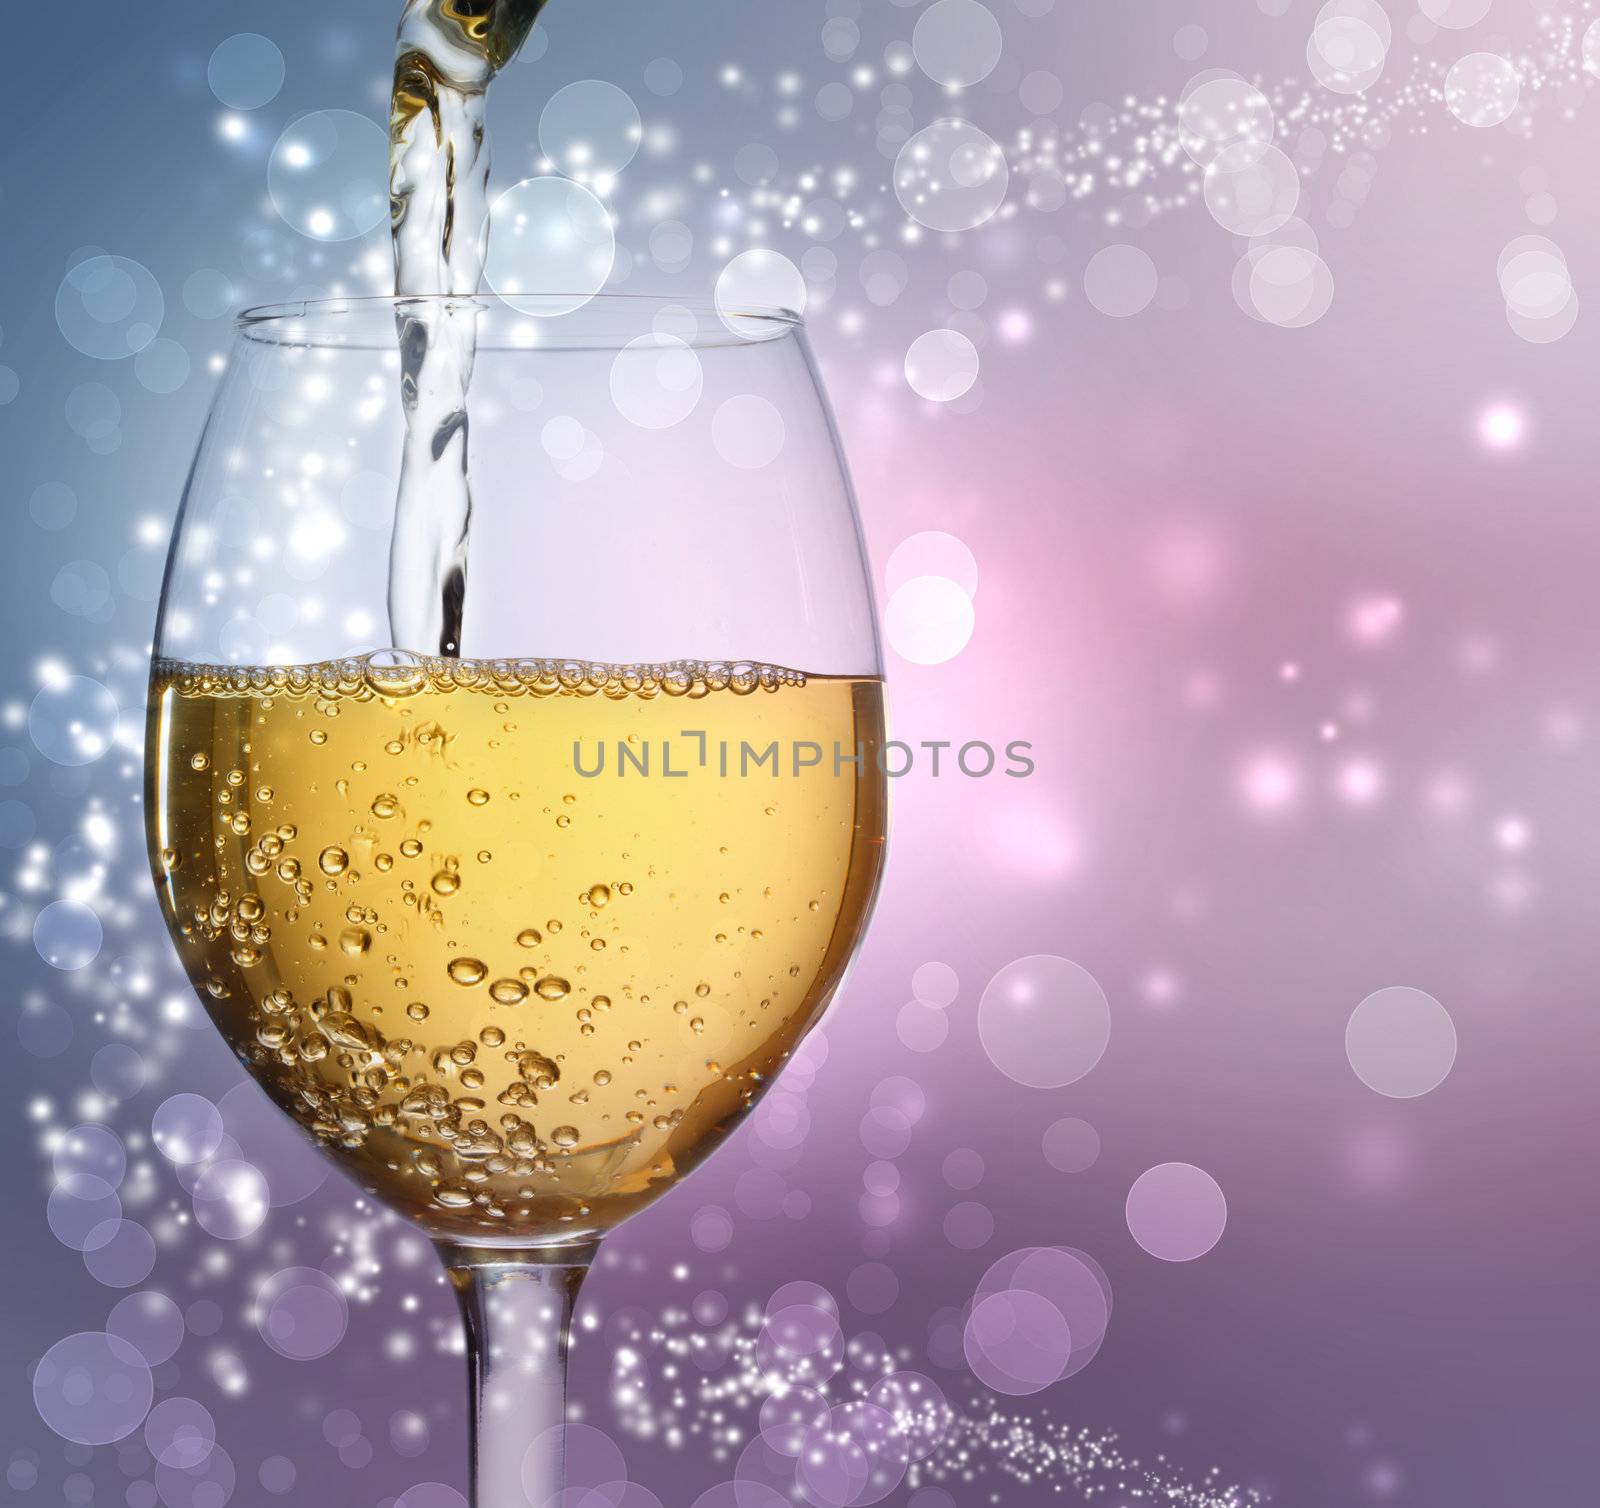 Wine Glass with White Wine by melpomene